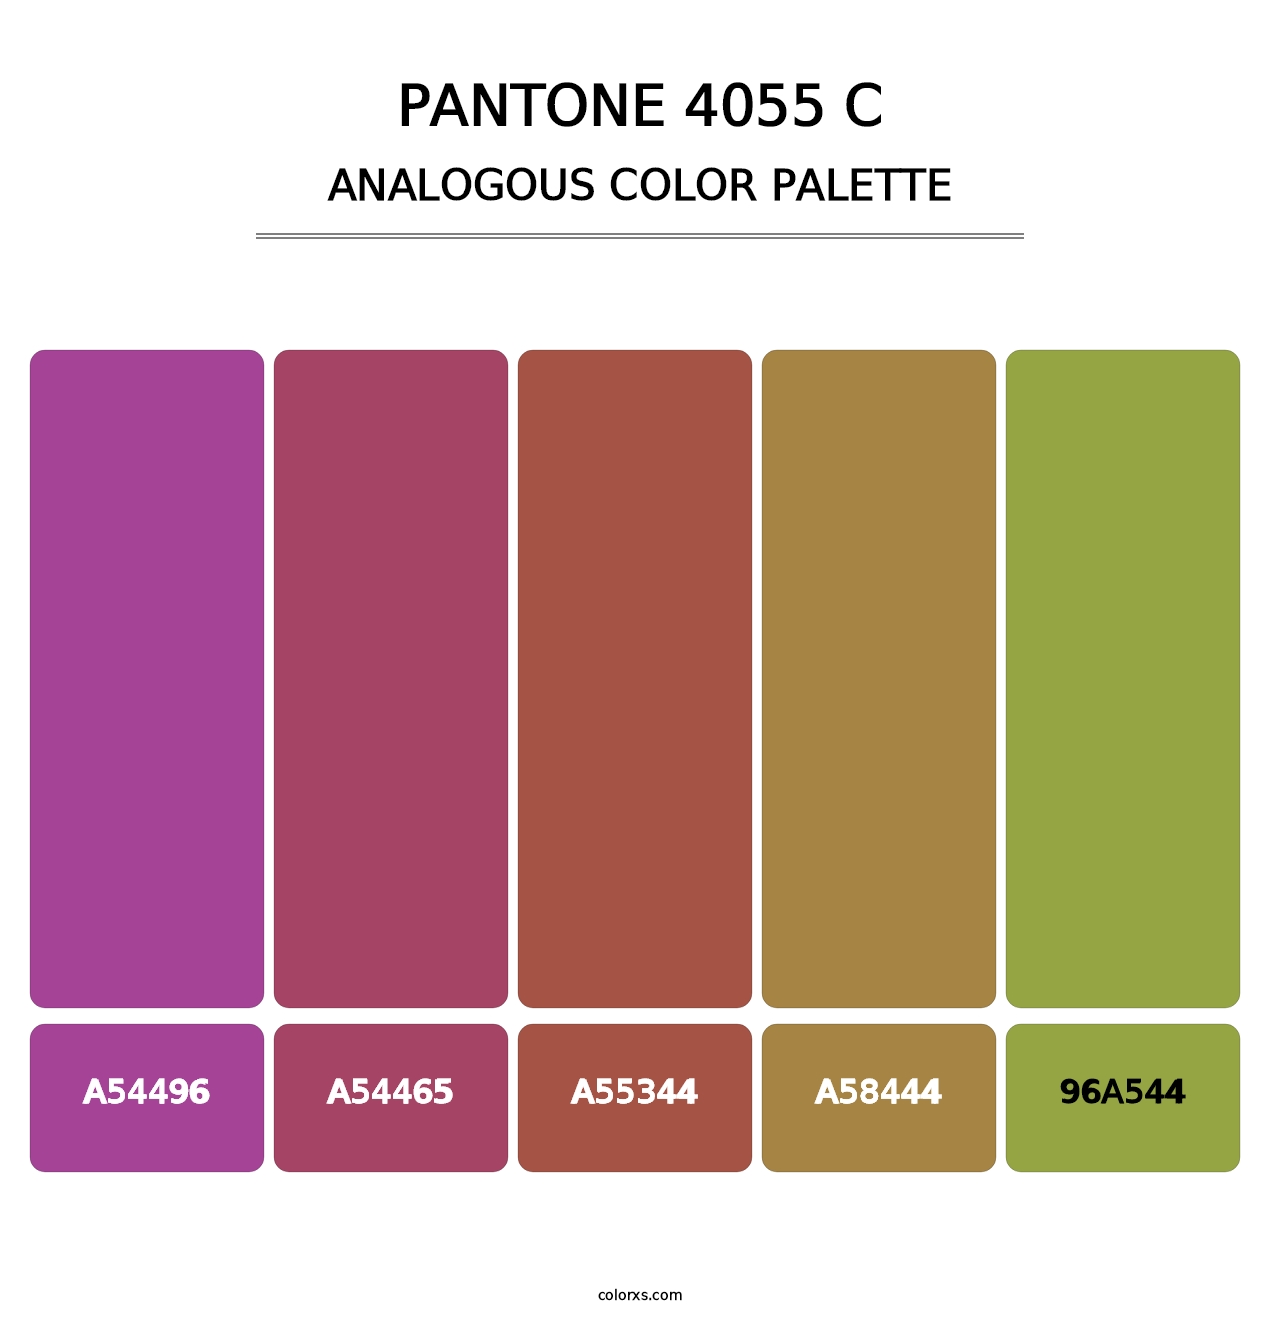 PANTONE 4055 C - Analogous Color Palette